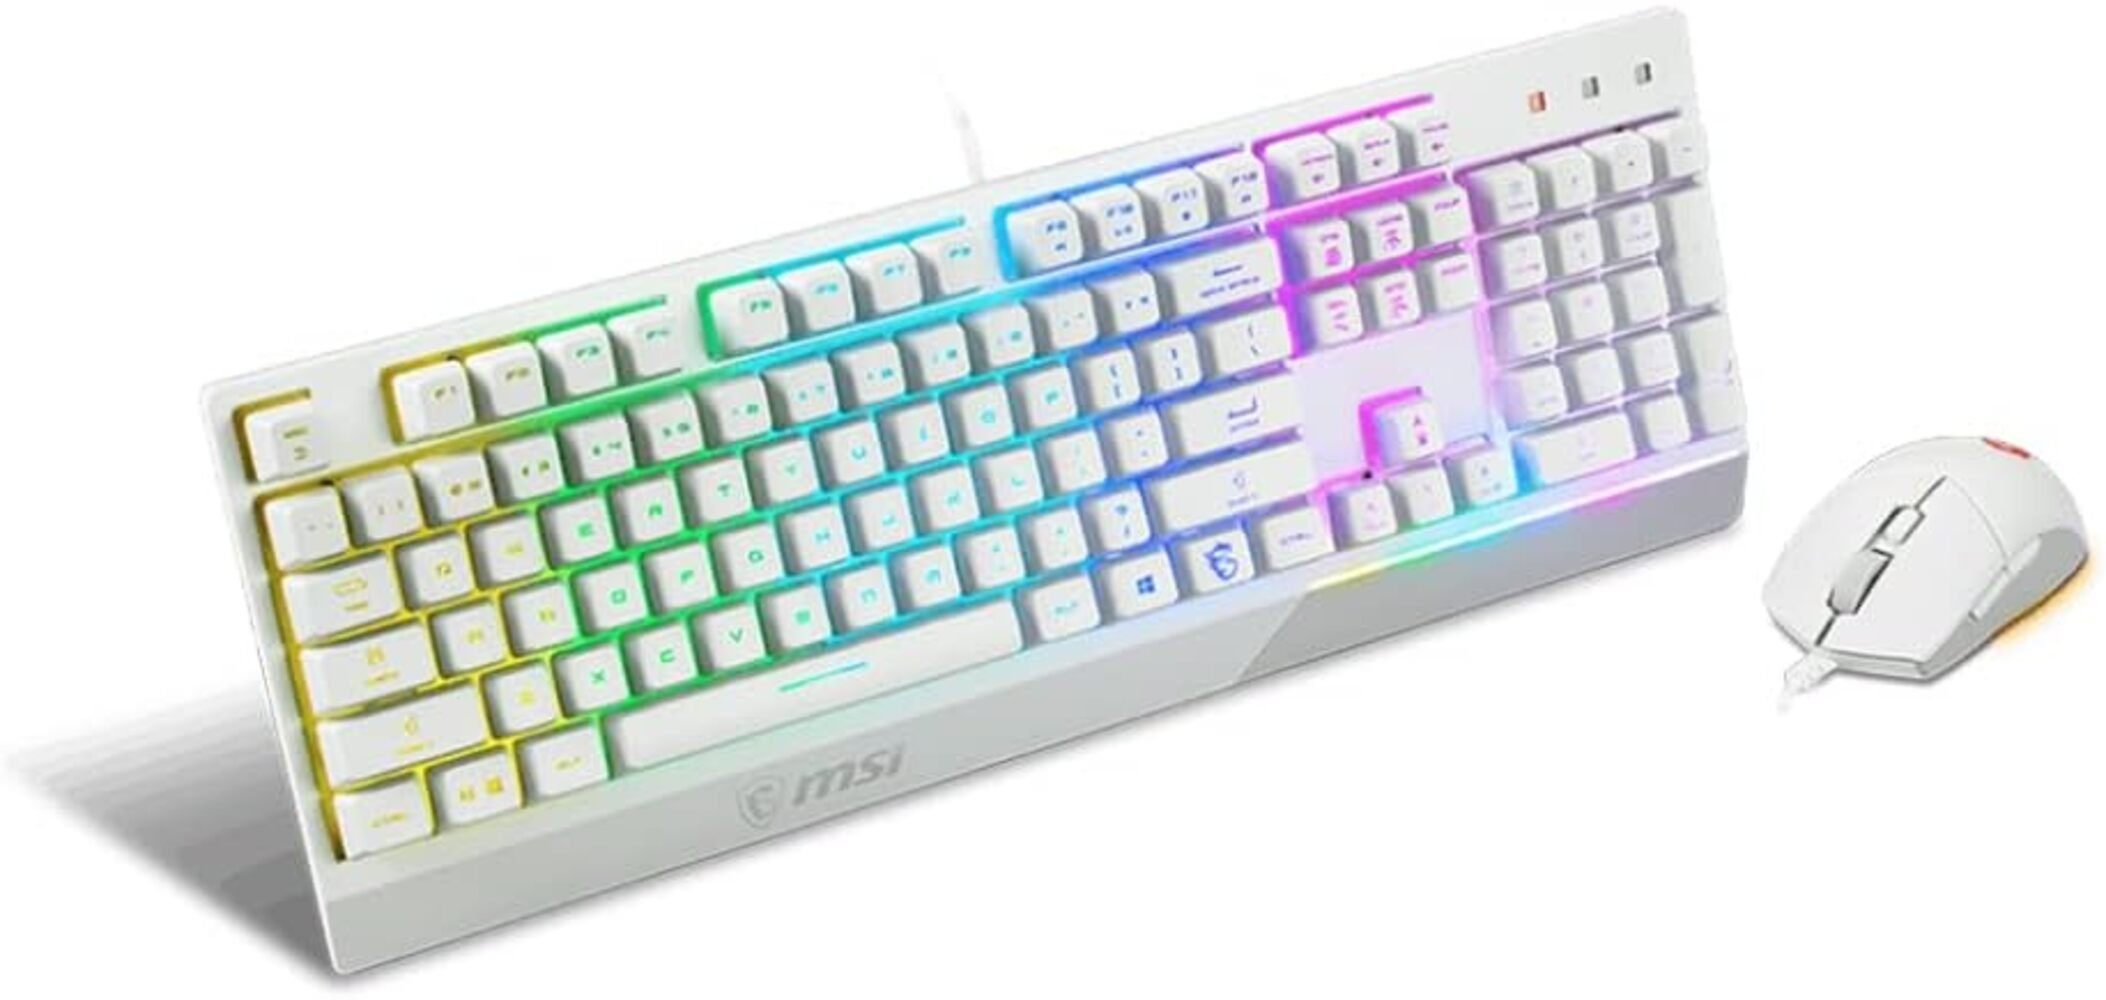 MSI Vigor GK30 Combo IT Semi Mechanische Gaming Tastatur- und Maus-Set, RGB Mystic Light Multimedia-Hotkey wasserabweisend ideal auch für Büro